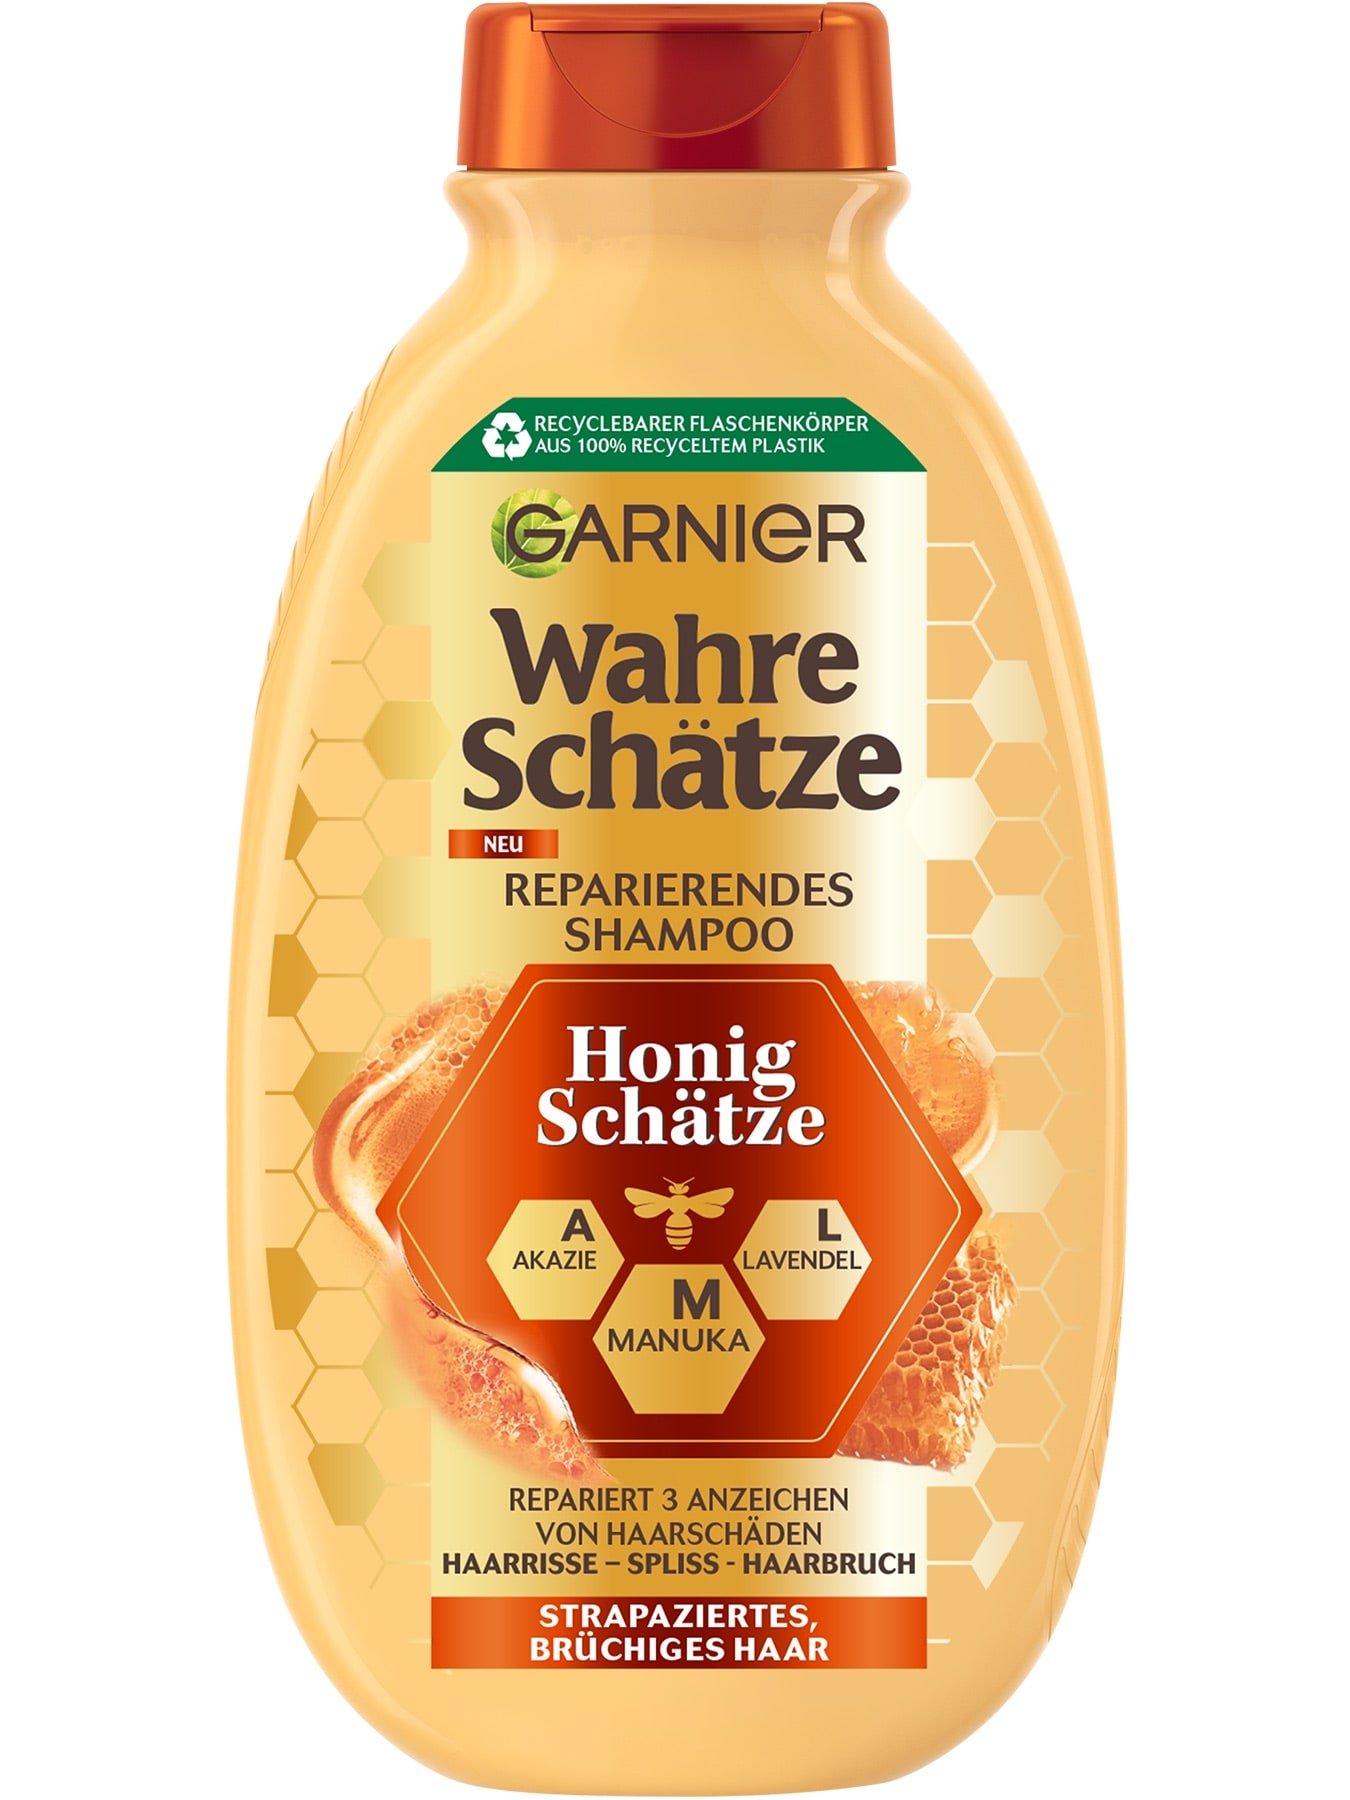 Wahre Schätze Reparierendes Shampoo Honig Schätze 250ml - Produktabbildung